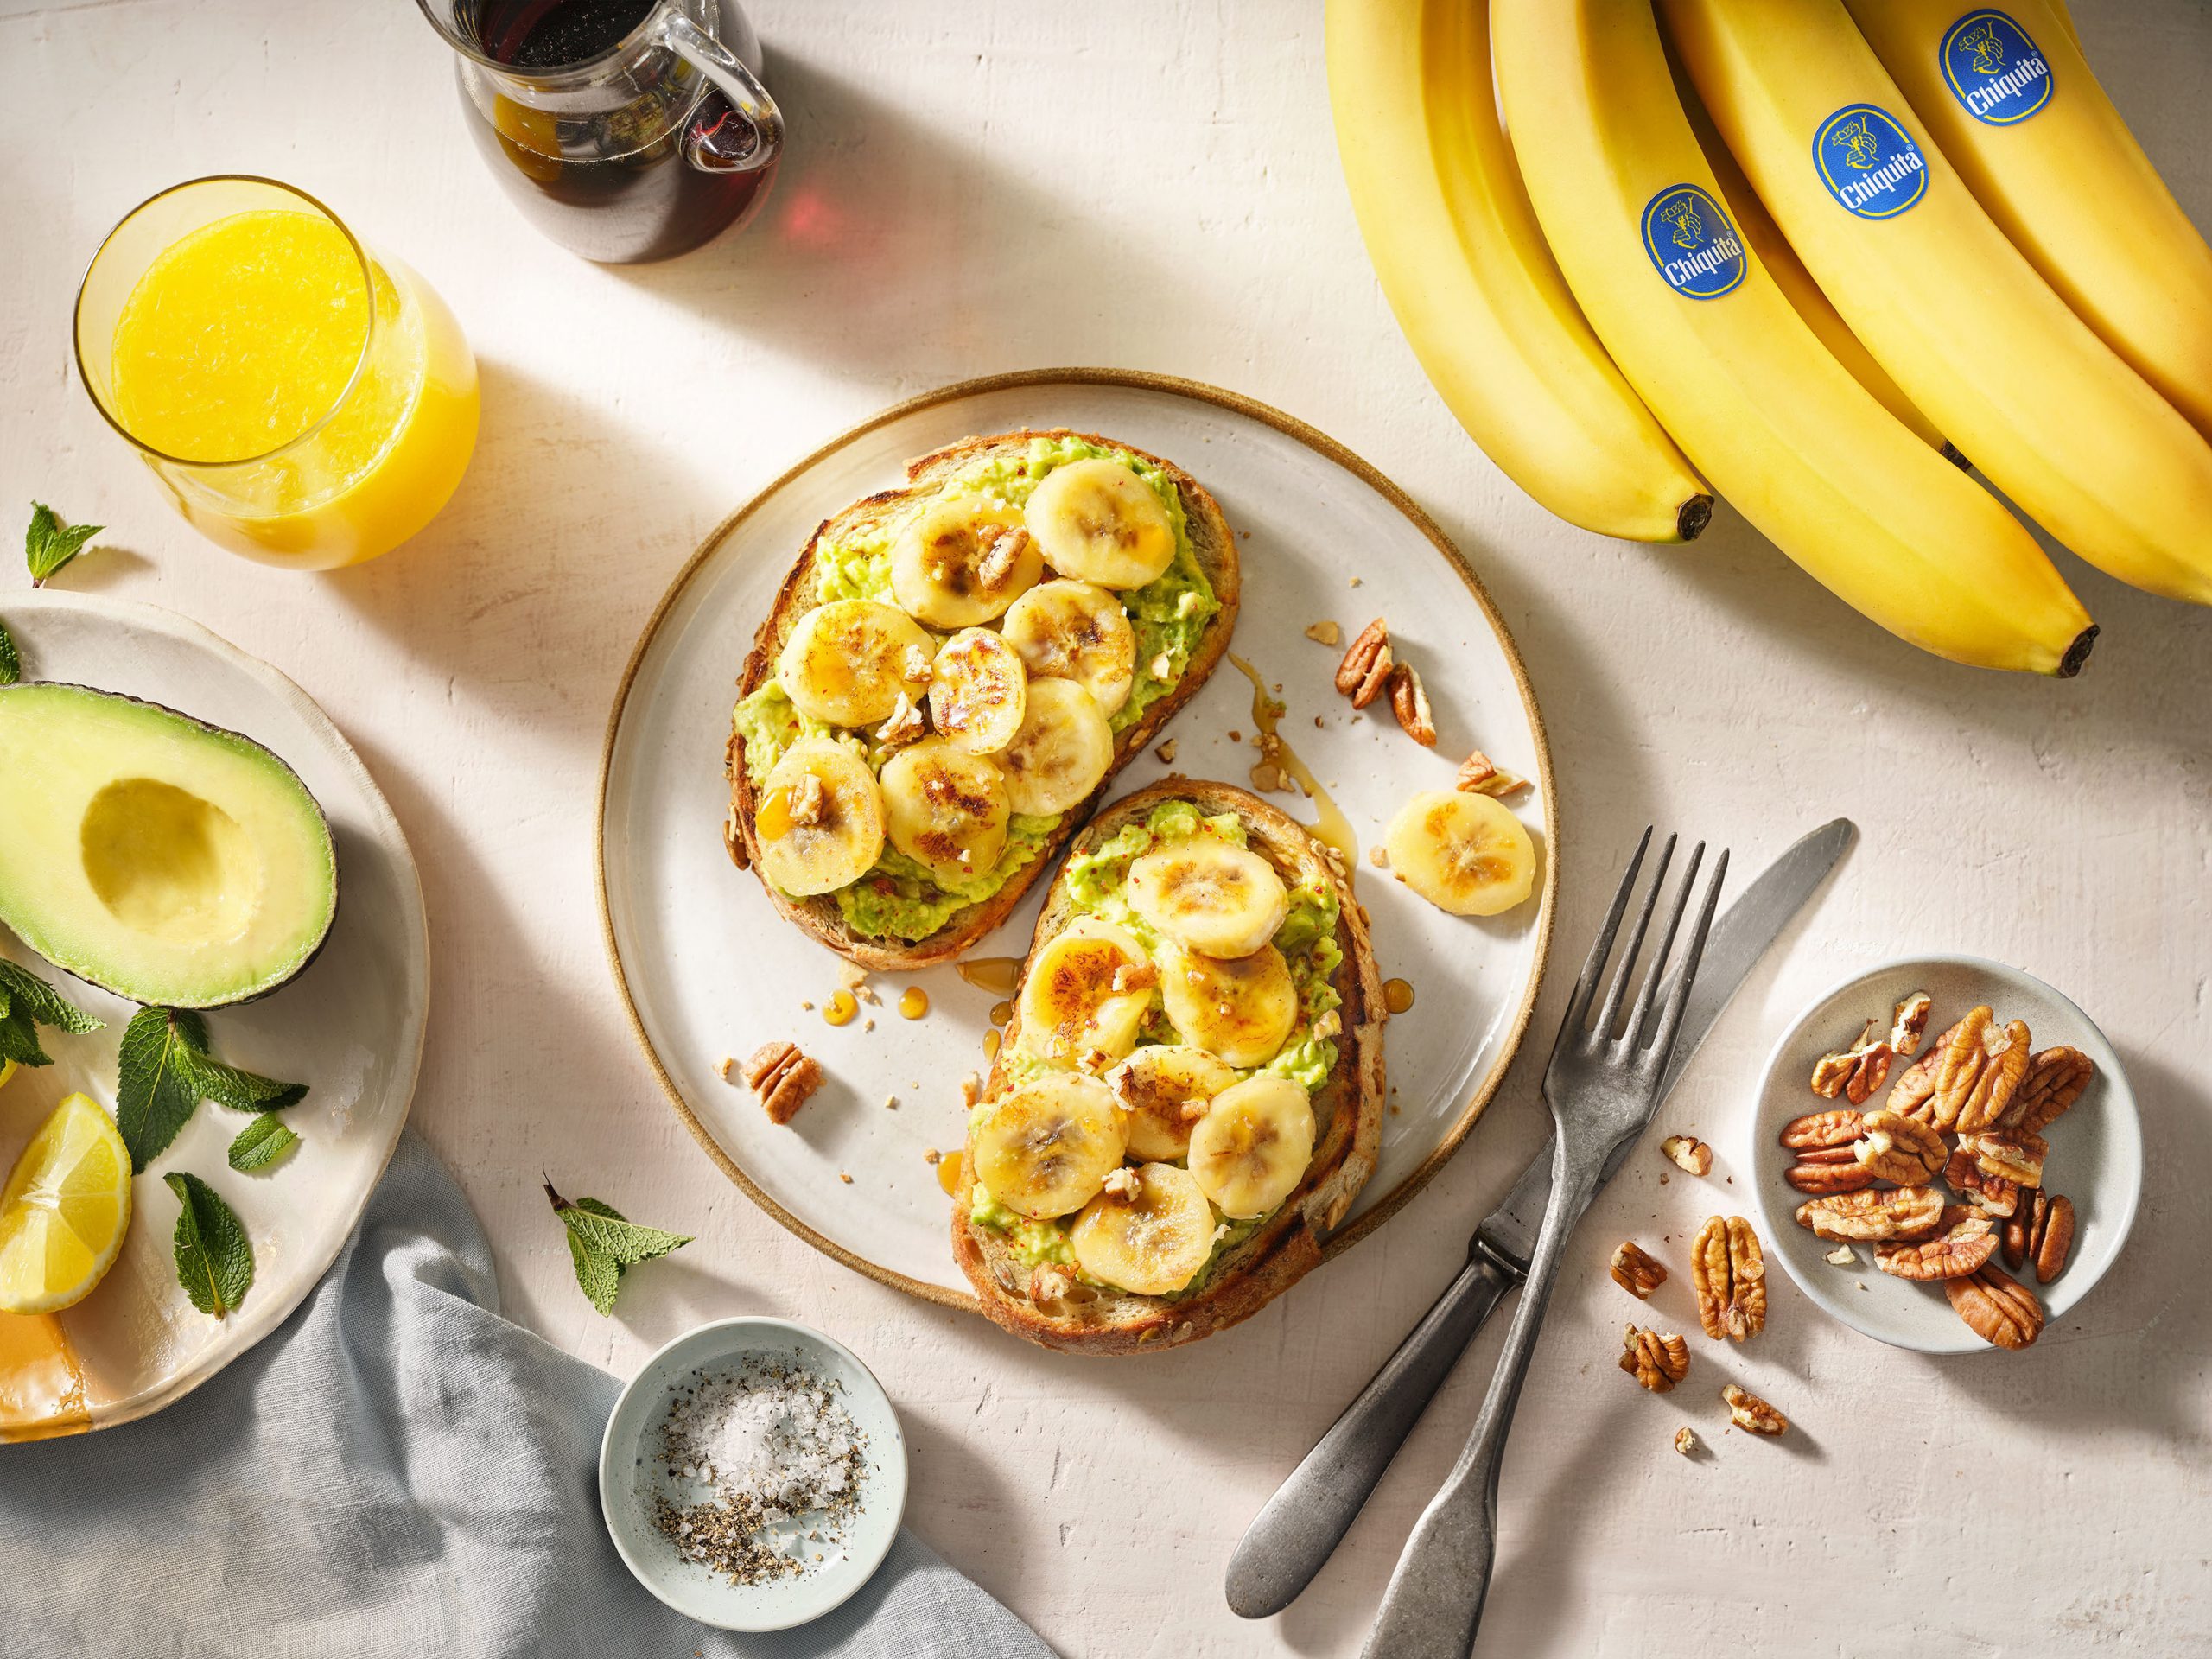 Πρωινό με φρυγανισμένο ψωμί, μπανάνα Chiquita και αβοκάντο